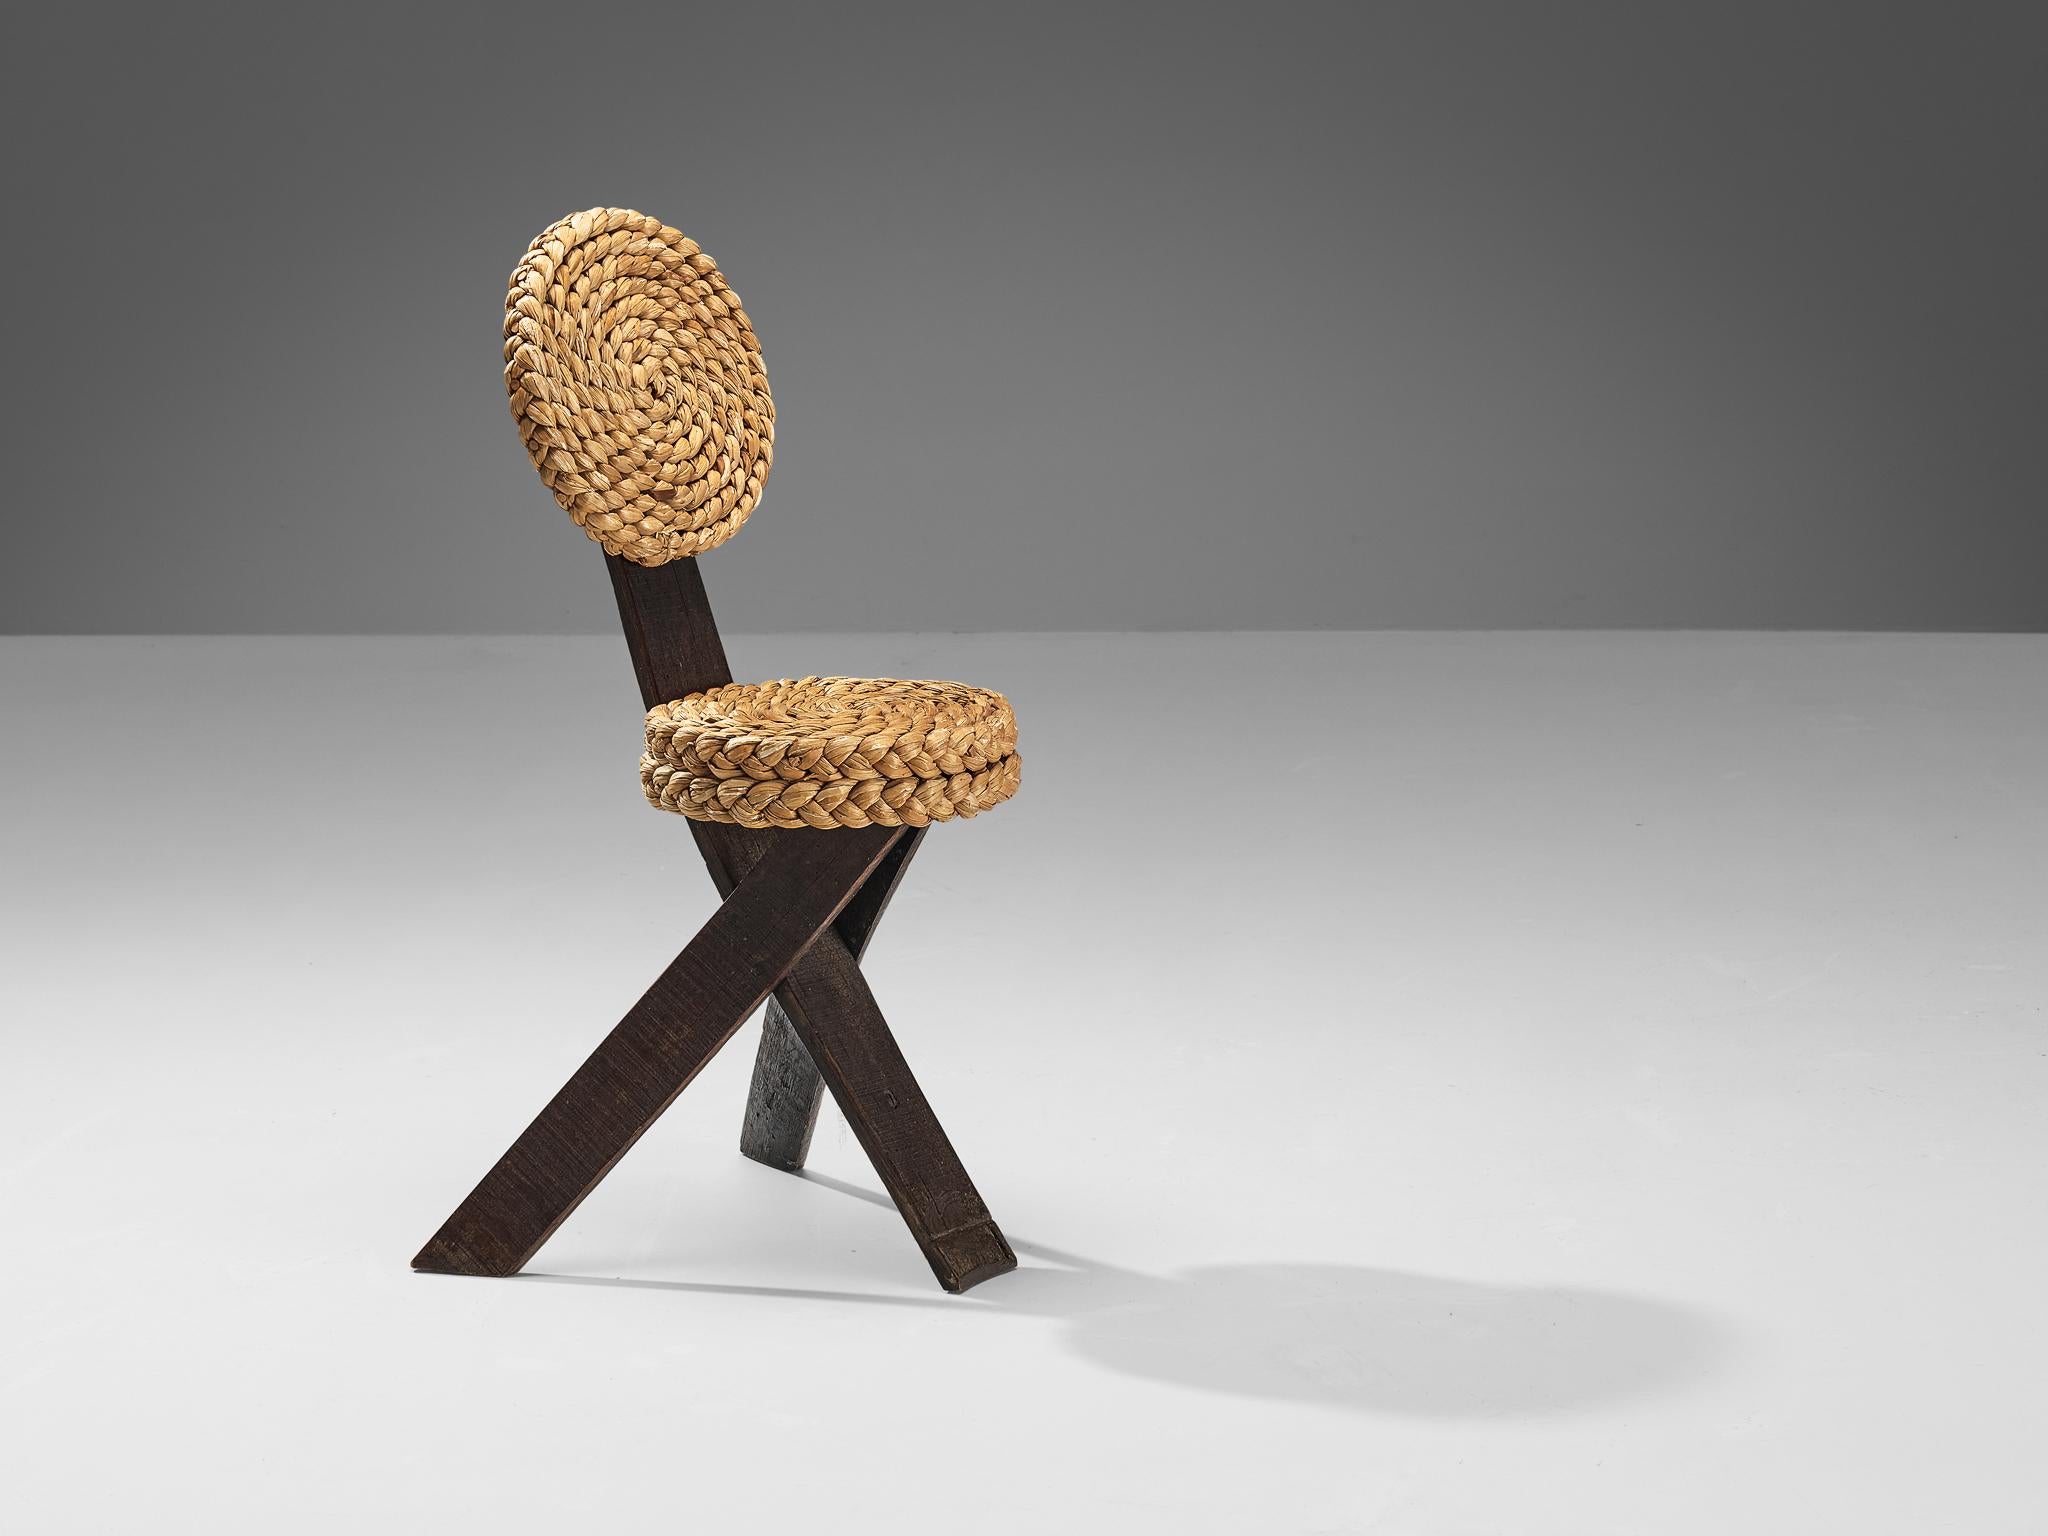 Adrien Audoux et Frida Minet, chaise d'appoint, chêne, paille, fer, France, années 1950

Cette chaise d'appoint sculpturale a été créée par le couple de designers français Adrien Audoux et Frida Minet. Les trois pieds plats sont en chêne foncé. L'un